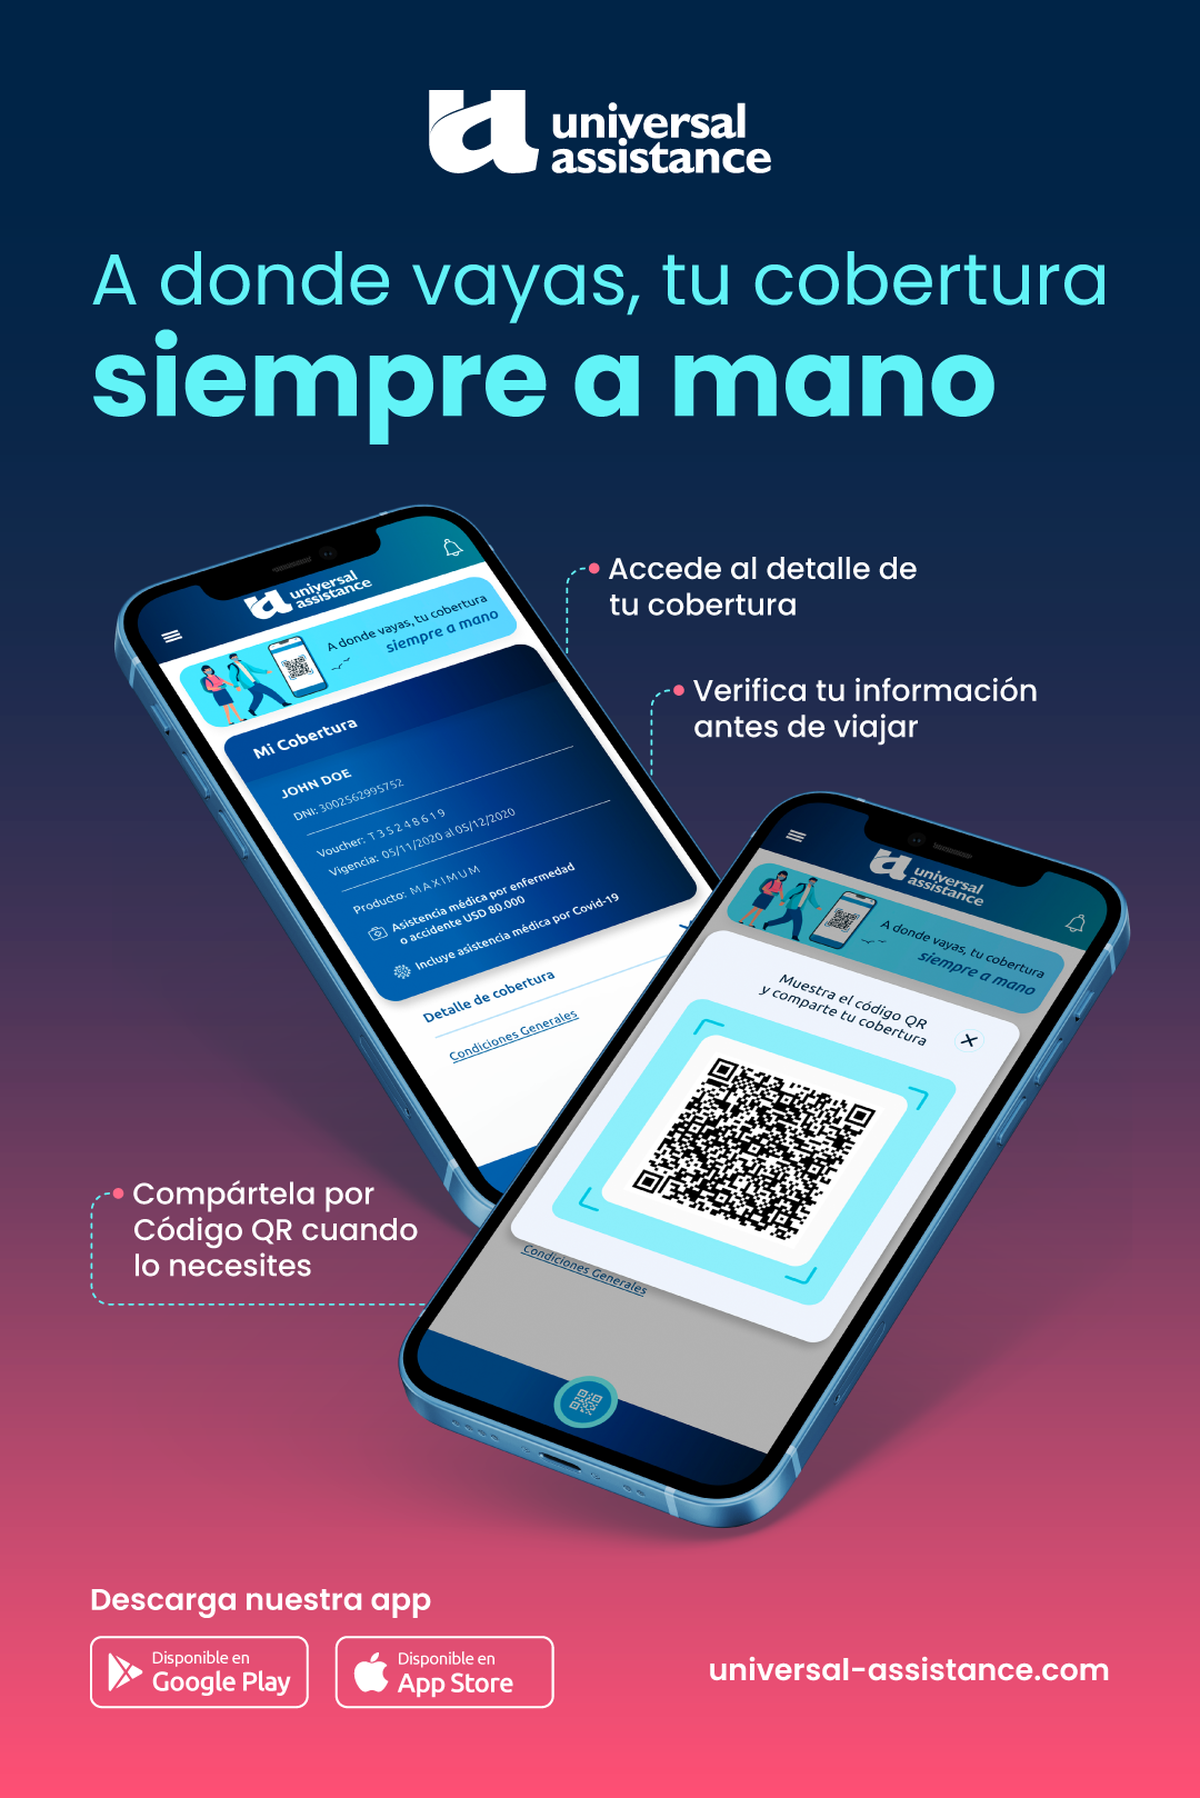 La nueva actualización de la App de Universal Assistance permite a los pasajeros mostrar su asistencia a través de un código QR de forma sencilla desde su teléfono, señalaron desde la compañía de asistencia al viajero.